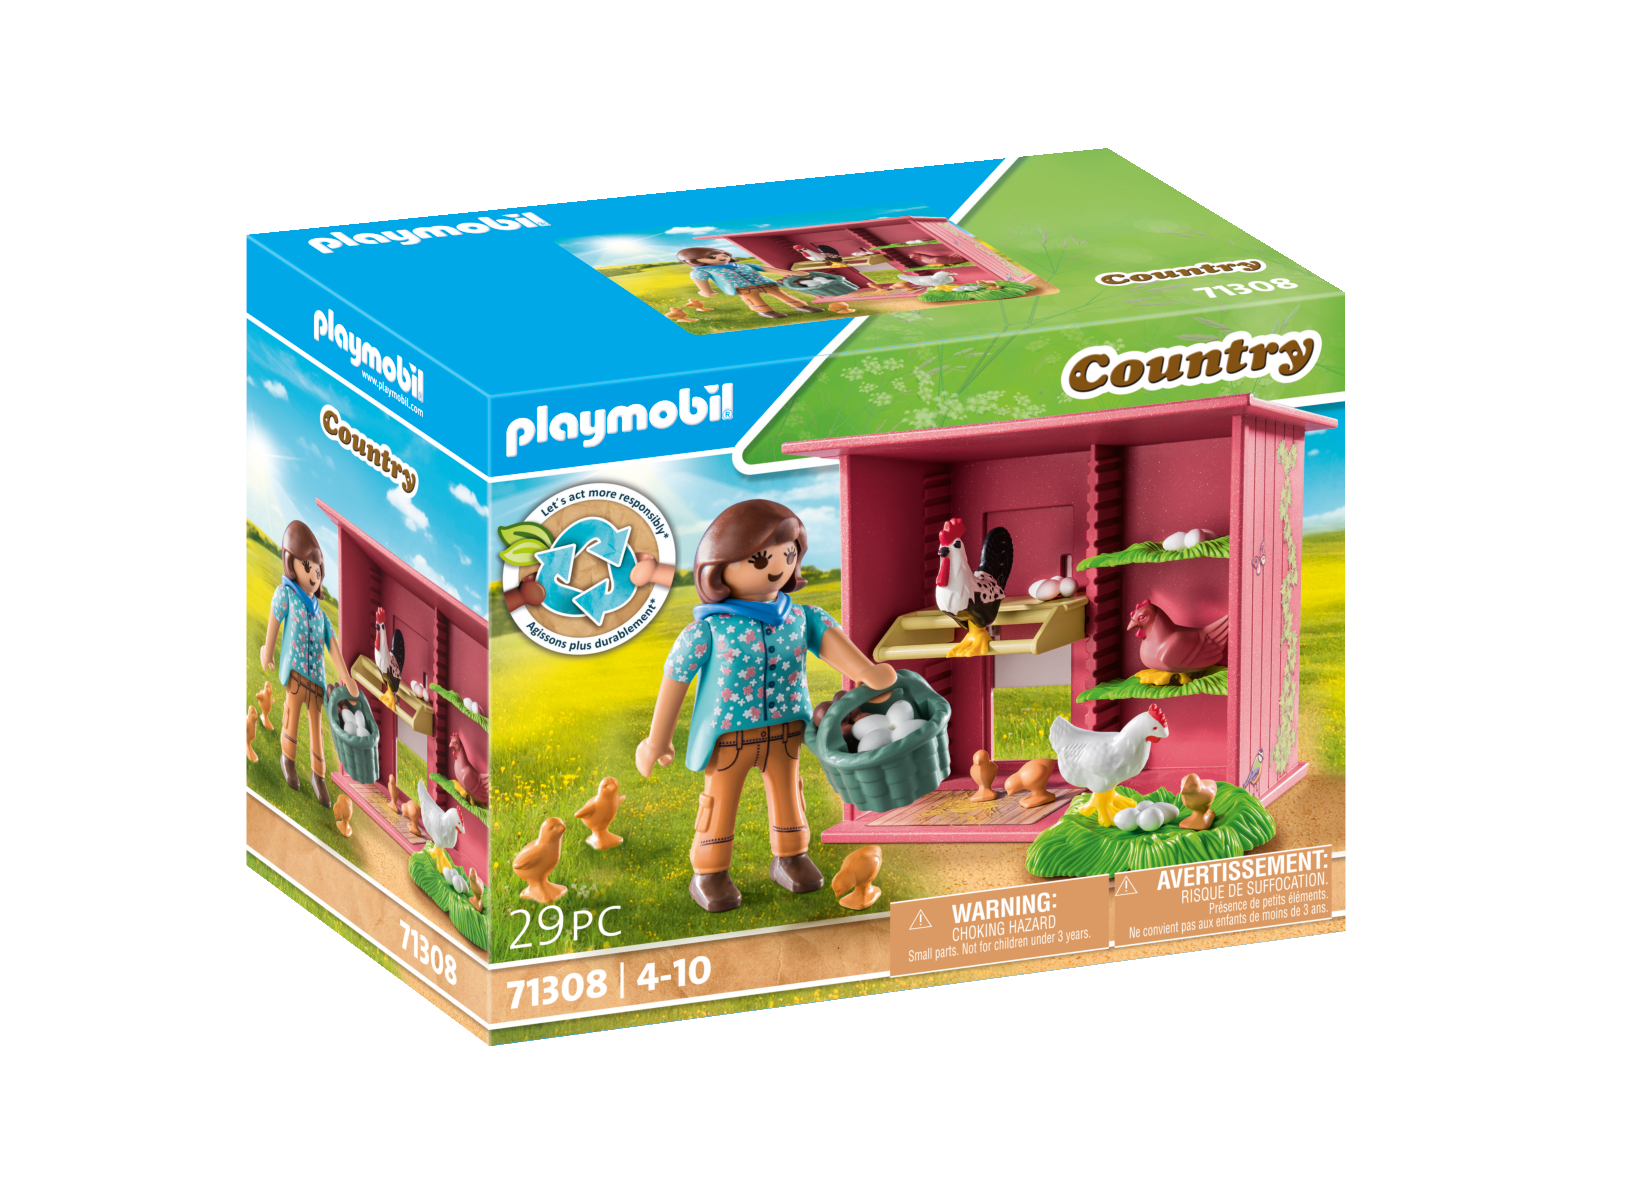 Playmobil 71308 pollaio per bambini dai 4 anni in su giocattolo sostenibile - Playmobil